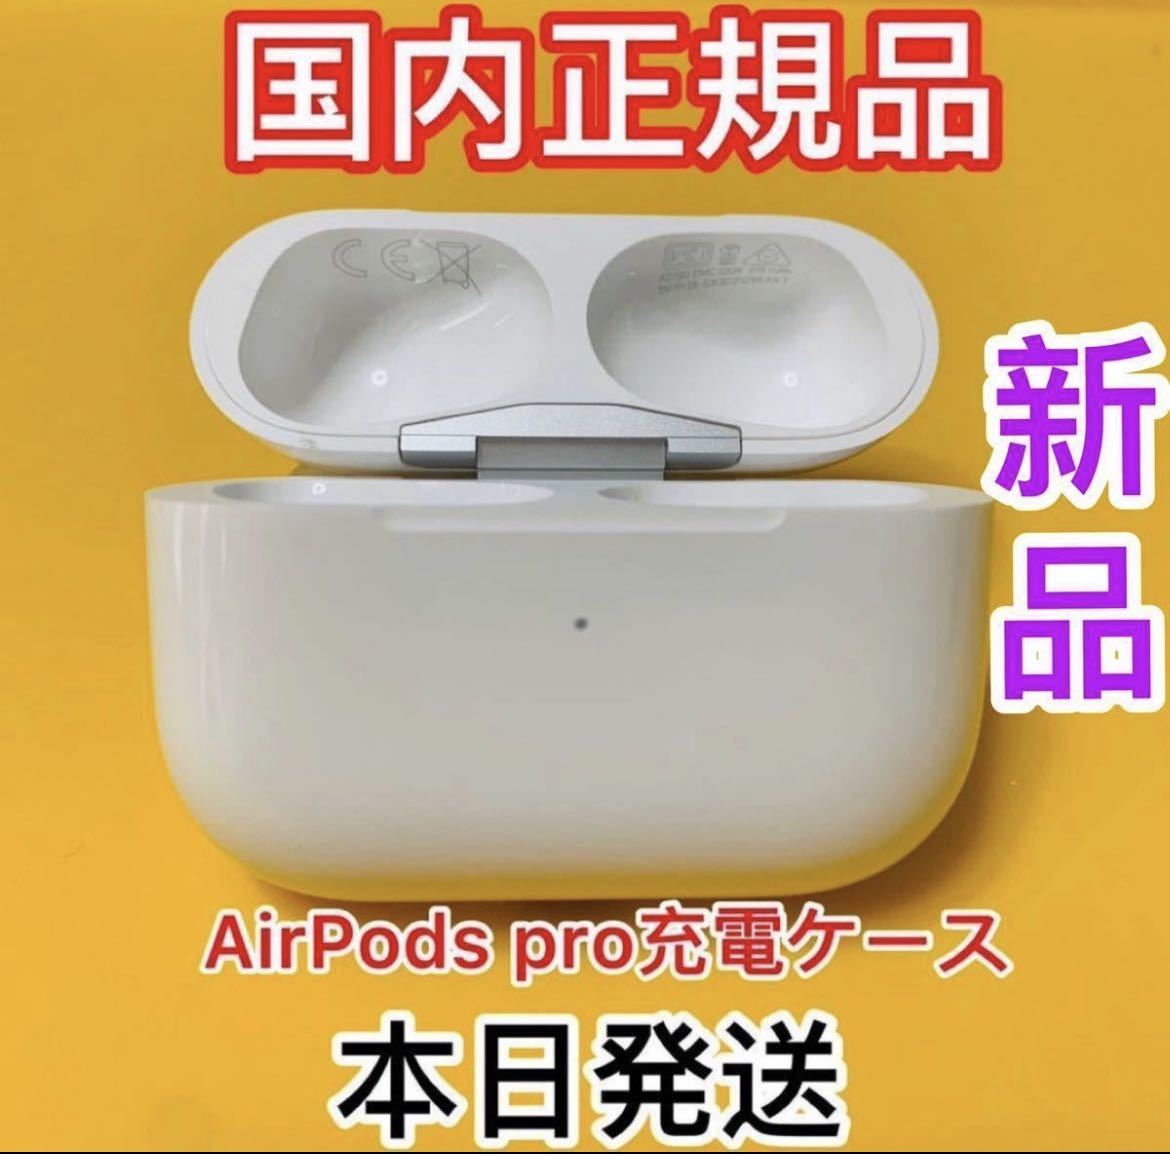 新しく着き 新品 充電器 AirPods Pro 充電ケース Apple 国内正規品 asakusa.sub.jp